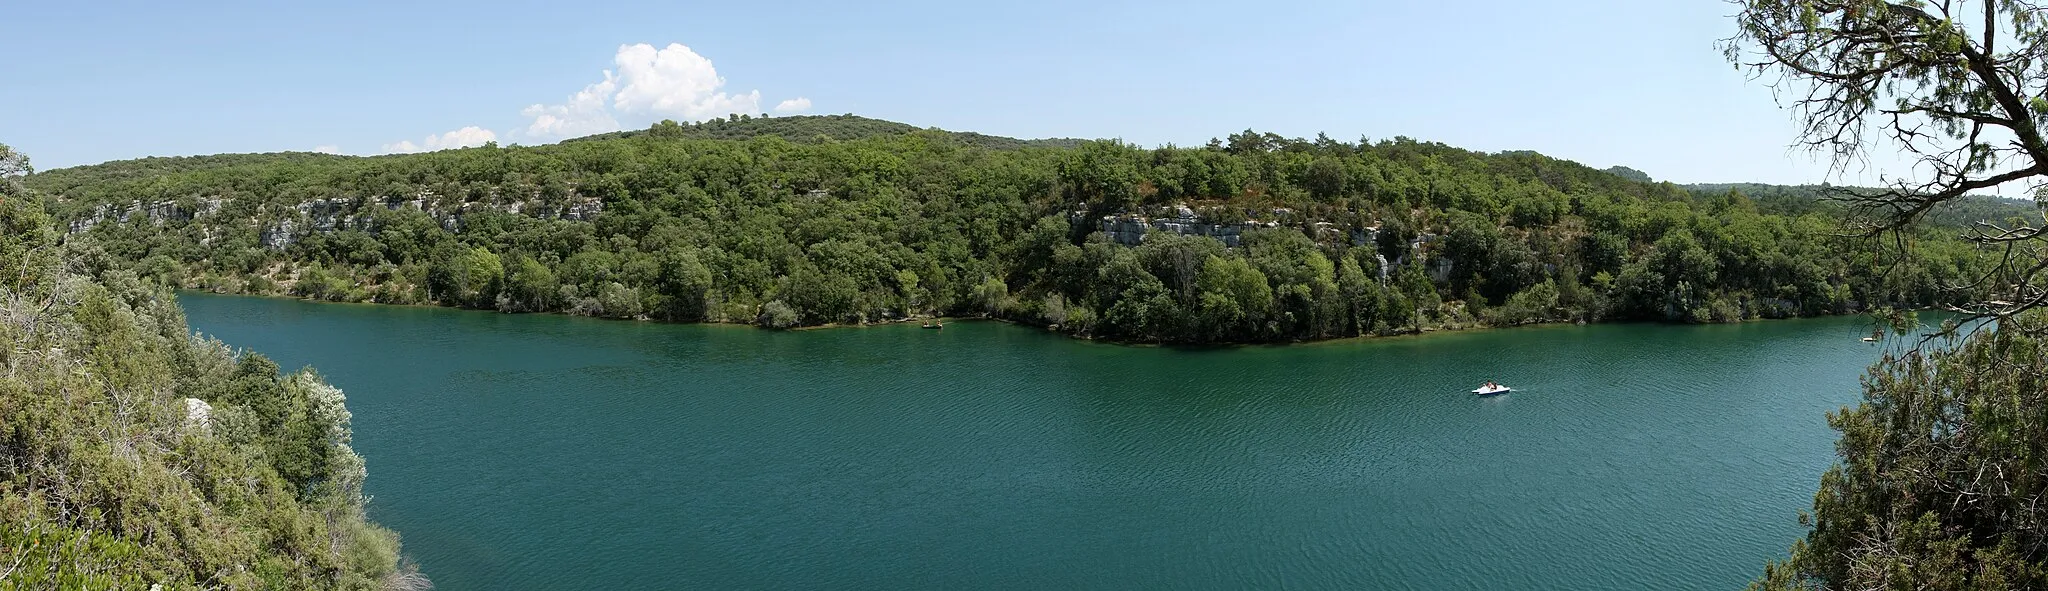 Photo showing: Panorama of the Verdon River near Saint-Laurent-du-Verdon, Alpes-de-Haute-Provence, France.